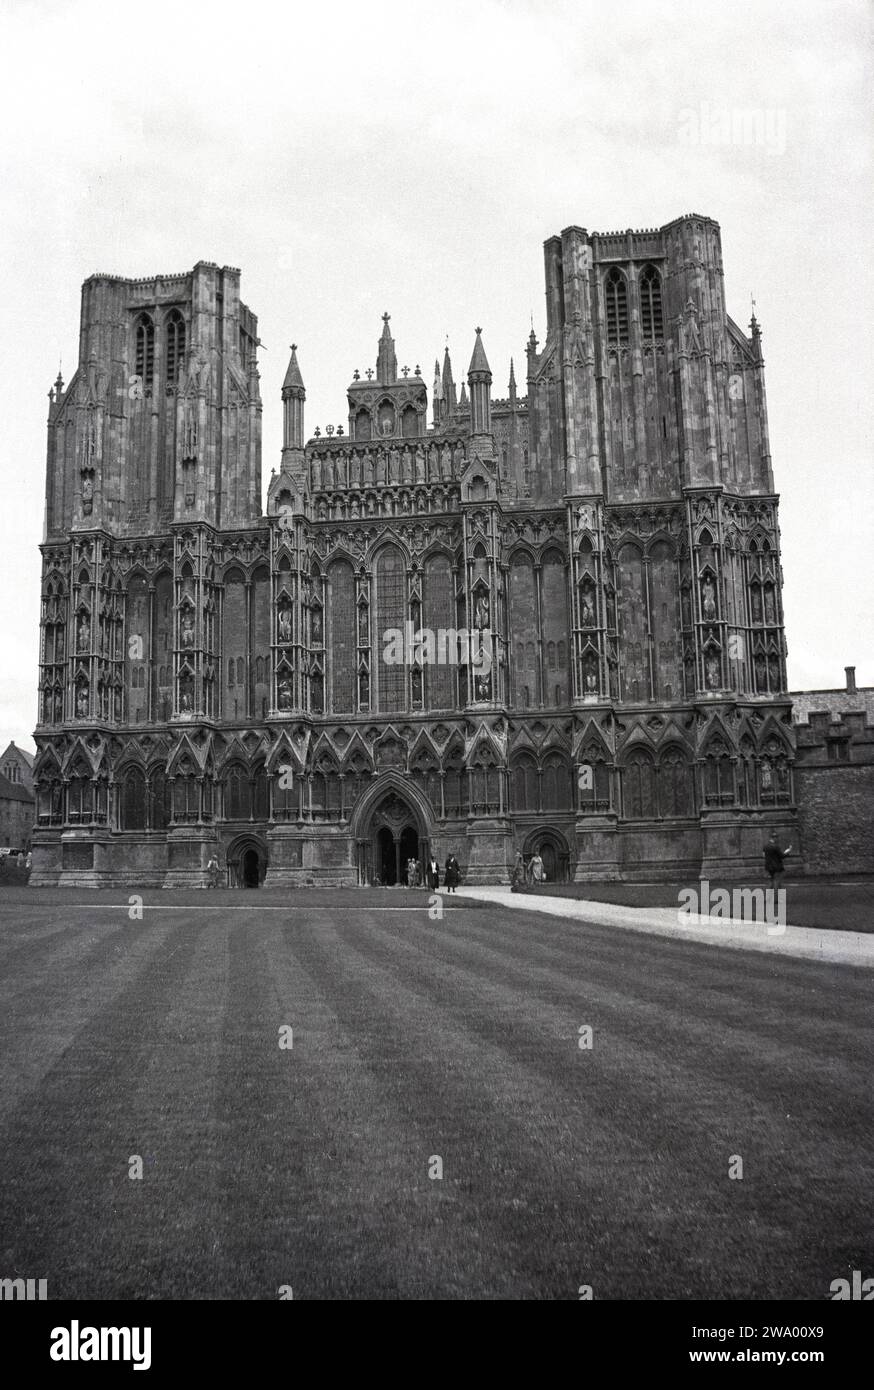 Années 1950, historique, extérieur de la cathédrale de Wells, Somerset, Angleterre, Royaume-Uni. Construite dans le style gothique anglais, elle était à l'origine une cathédrale catholique romaine, mais est devenue une cathédrale anglicane lorsque Henri VIII a demandé à l'église anglaise de se séparer de Rome. Banque D'Images